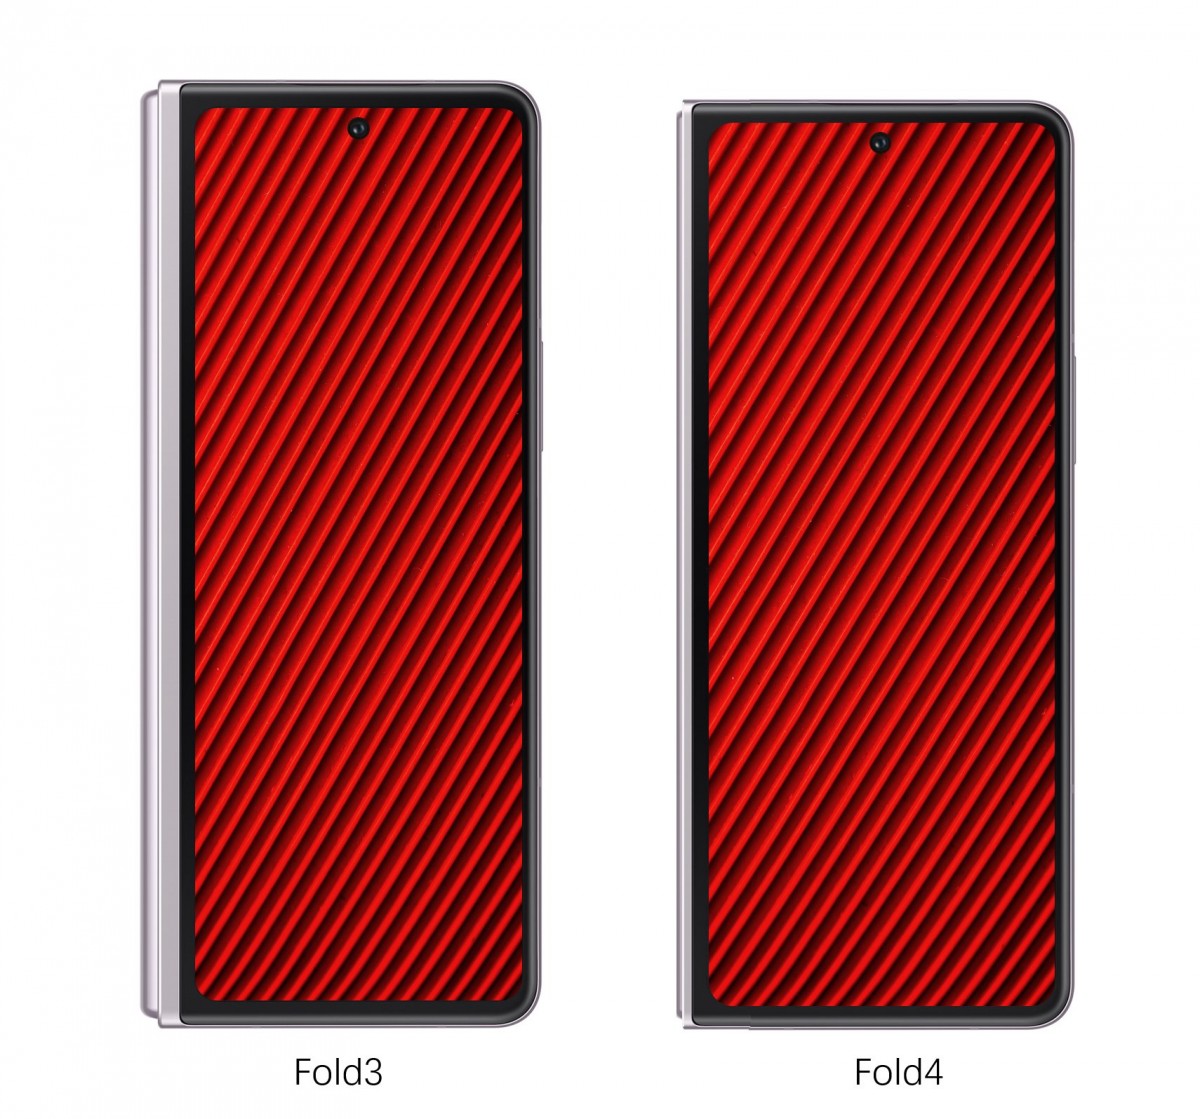 Le Galaxy Z Fold4 aura un rapport d'aspect plus squatté par rapport à son prédécesseur